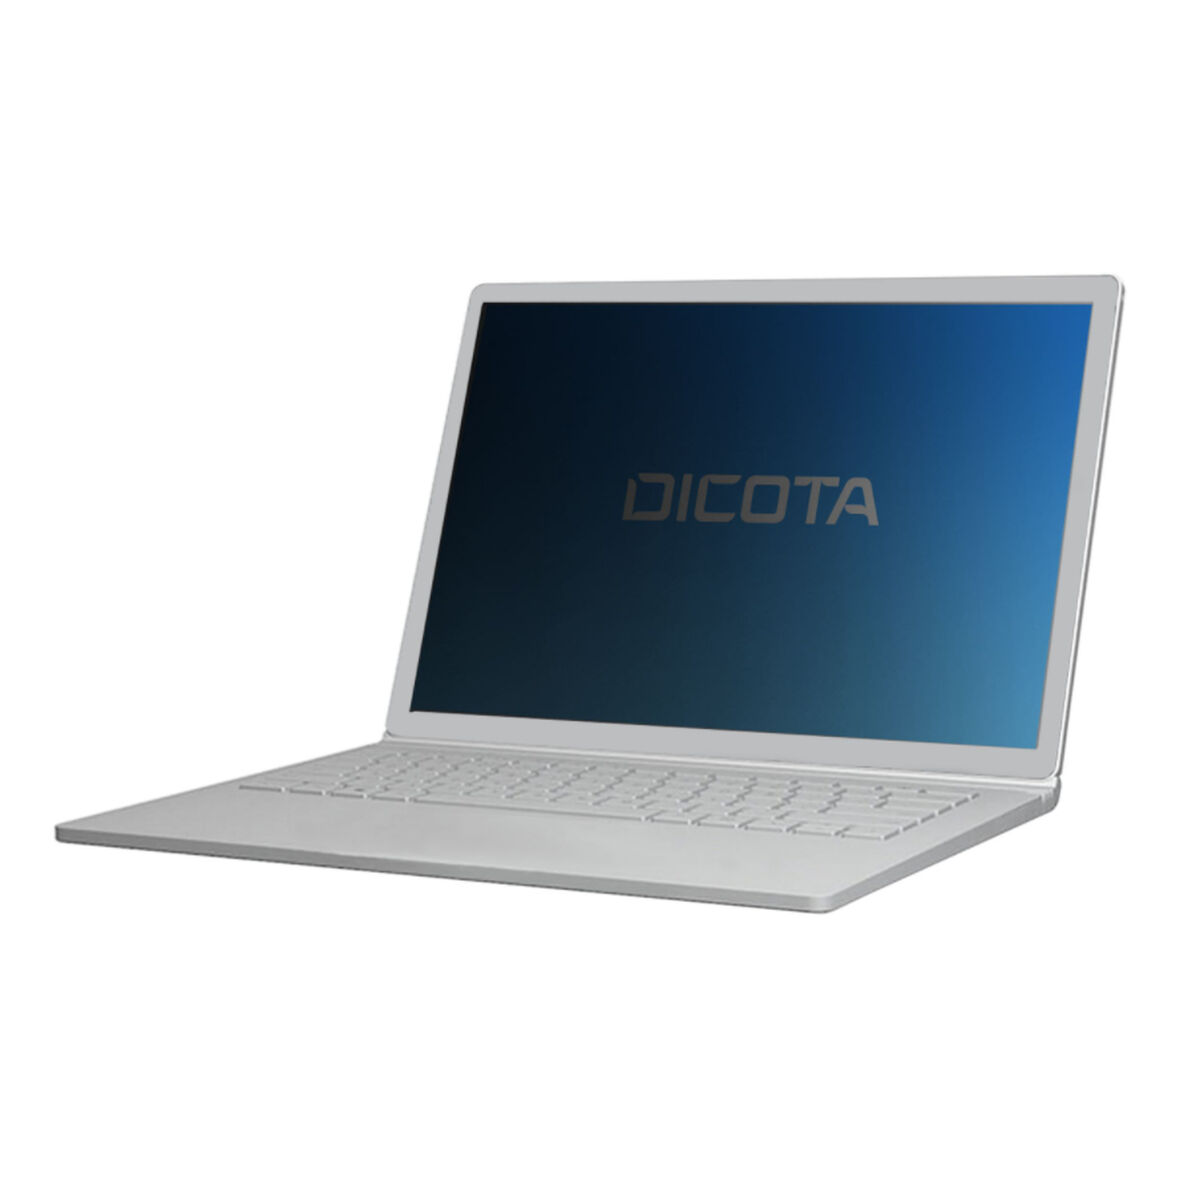 Osta tuote Yksityisyyssuoja näytölle Dicota D31891 verkkokaupastamme Korhone: Tietokoneet & Elektroniikka 20% alennuksella koodilla VIIKONLOPPU